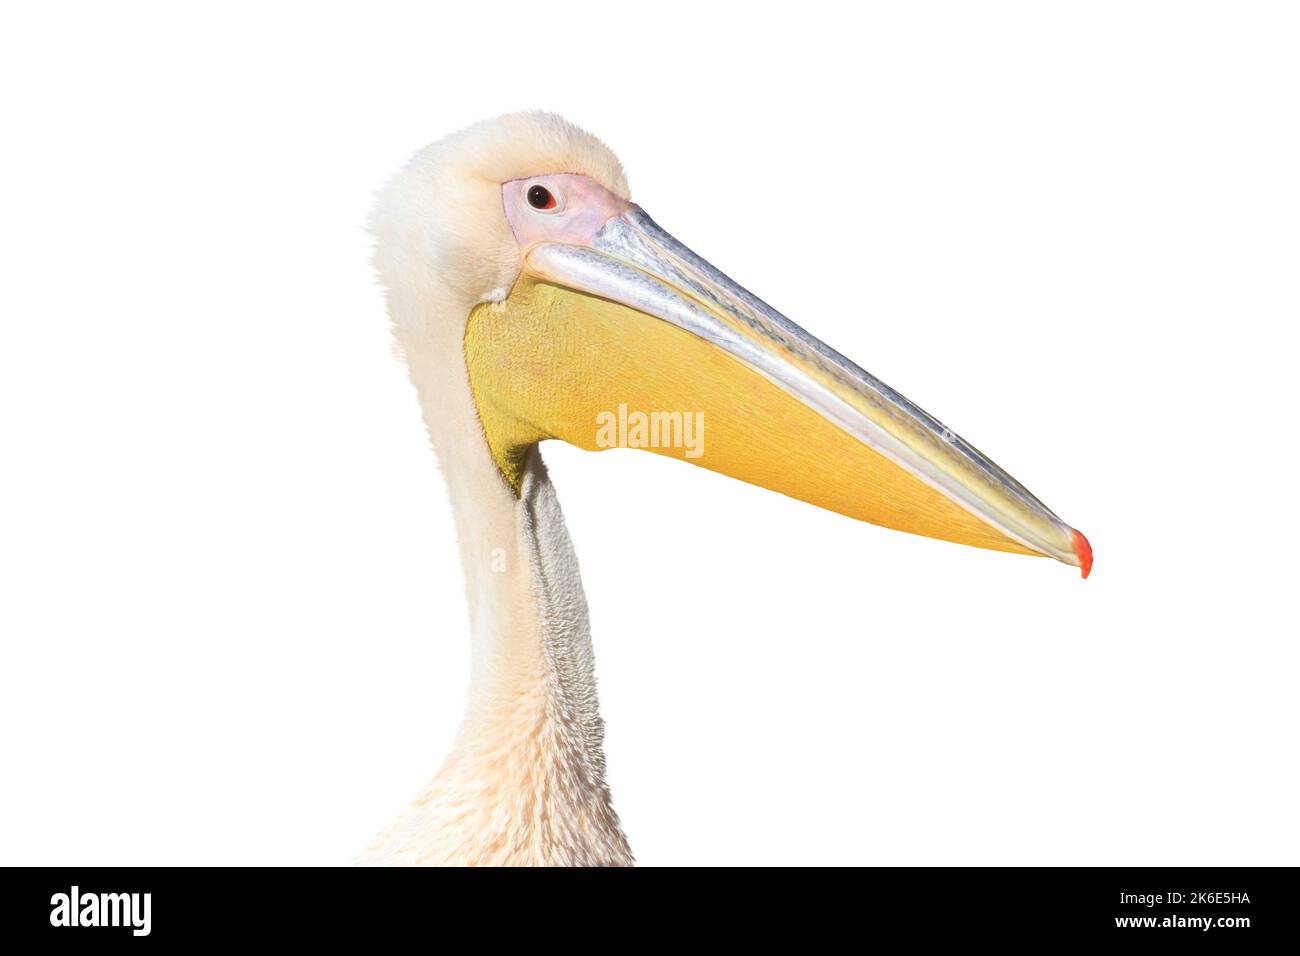 ritratto pelican isolato su sfondo bianco Foto Stock